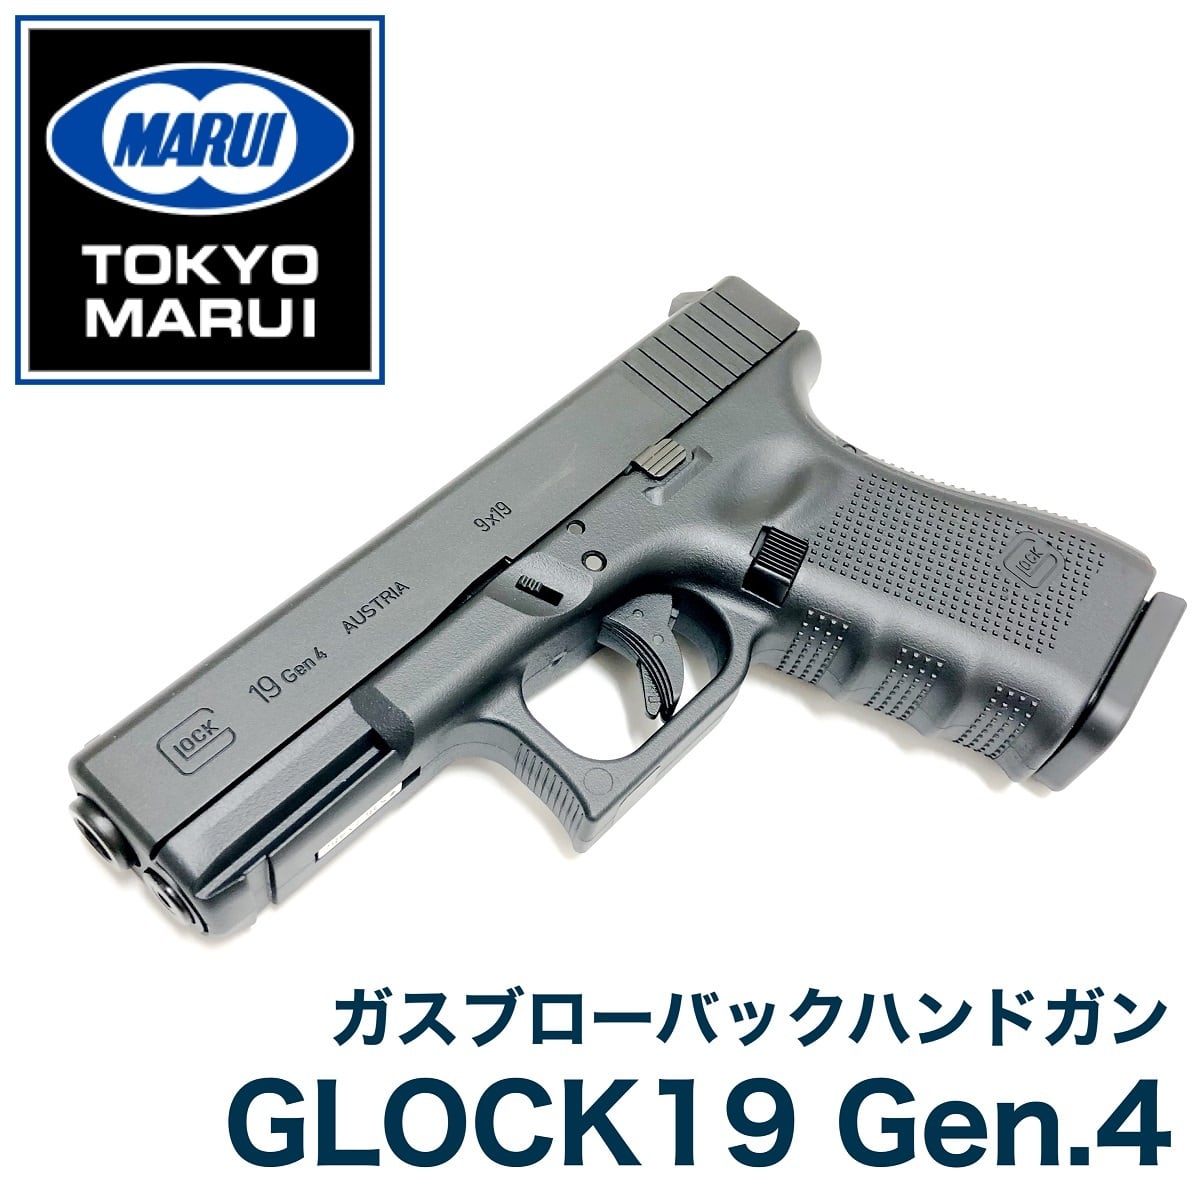 東京マルイ製 グロック19 Gen.4 ガスブローバック G19 Gen4